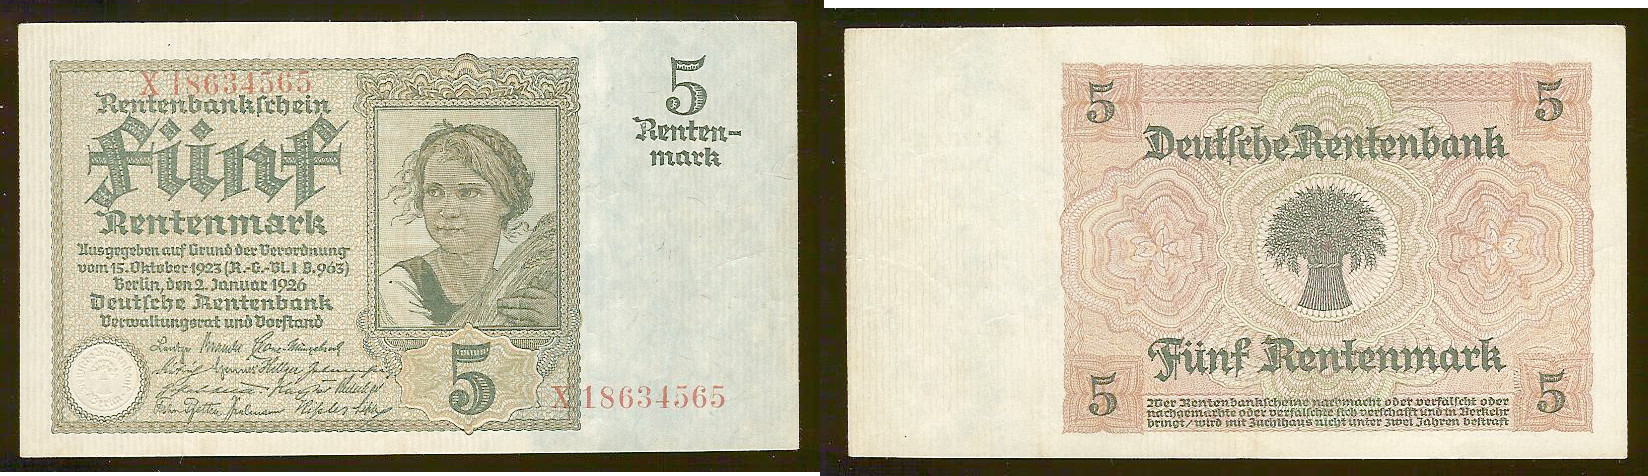 Germany 5 rentenmark 1926 EF